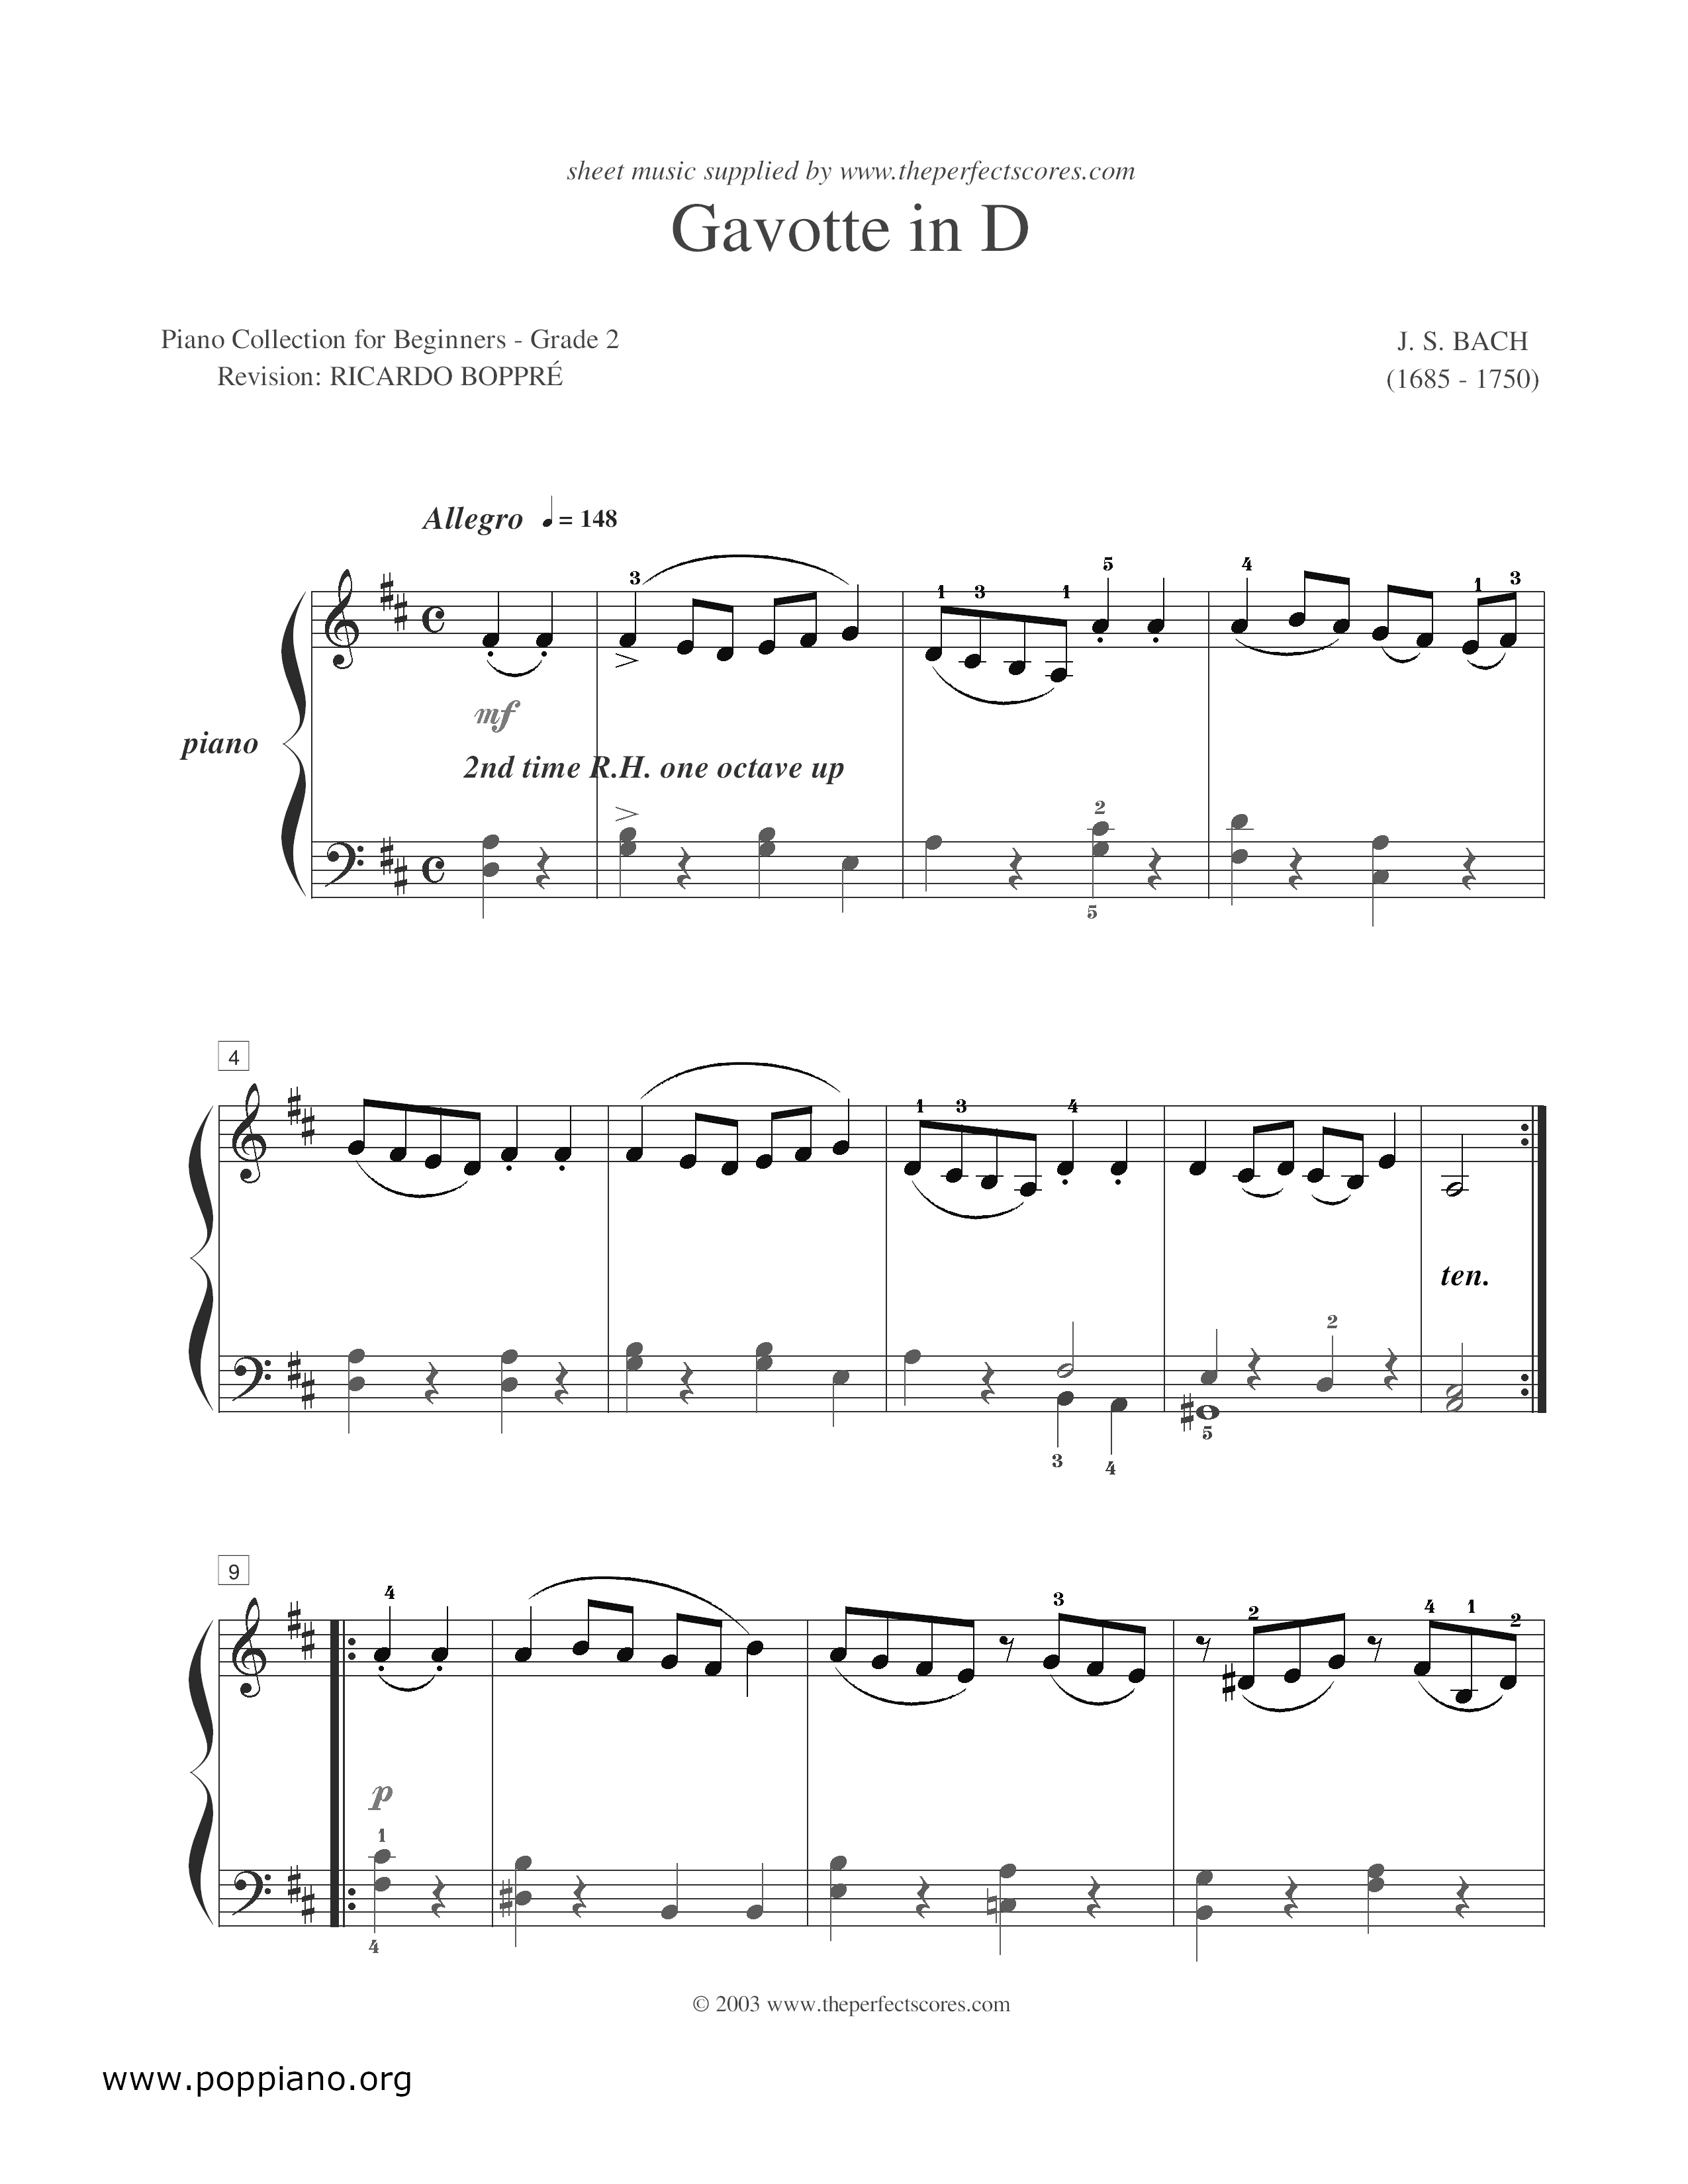 D大調加伏特舞曲 (Gavotte in D) Score